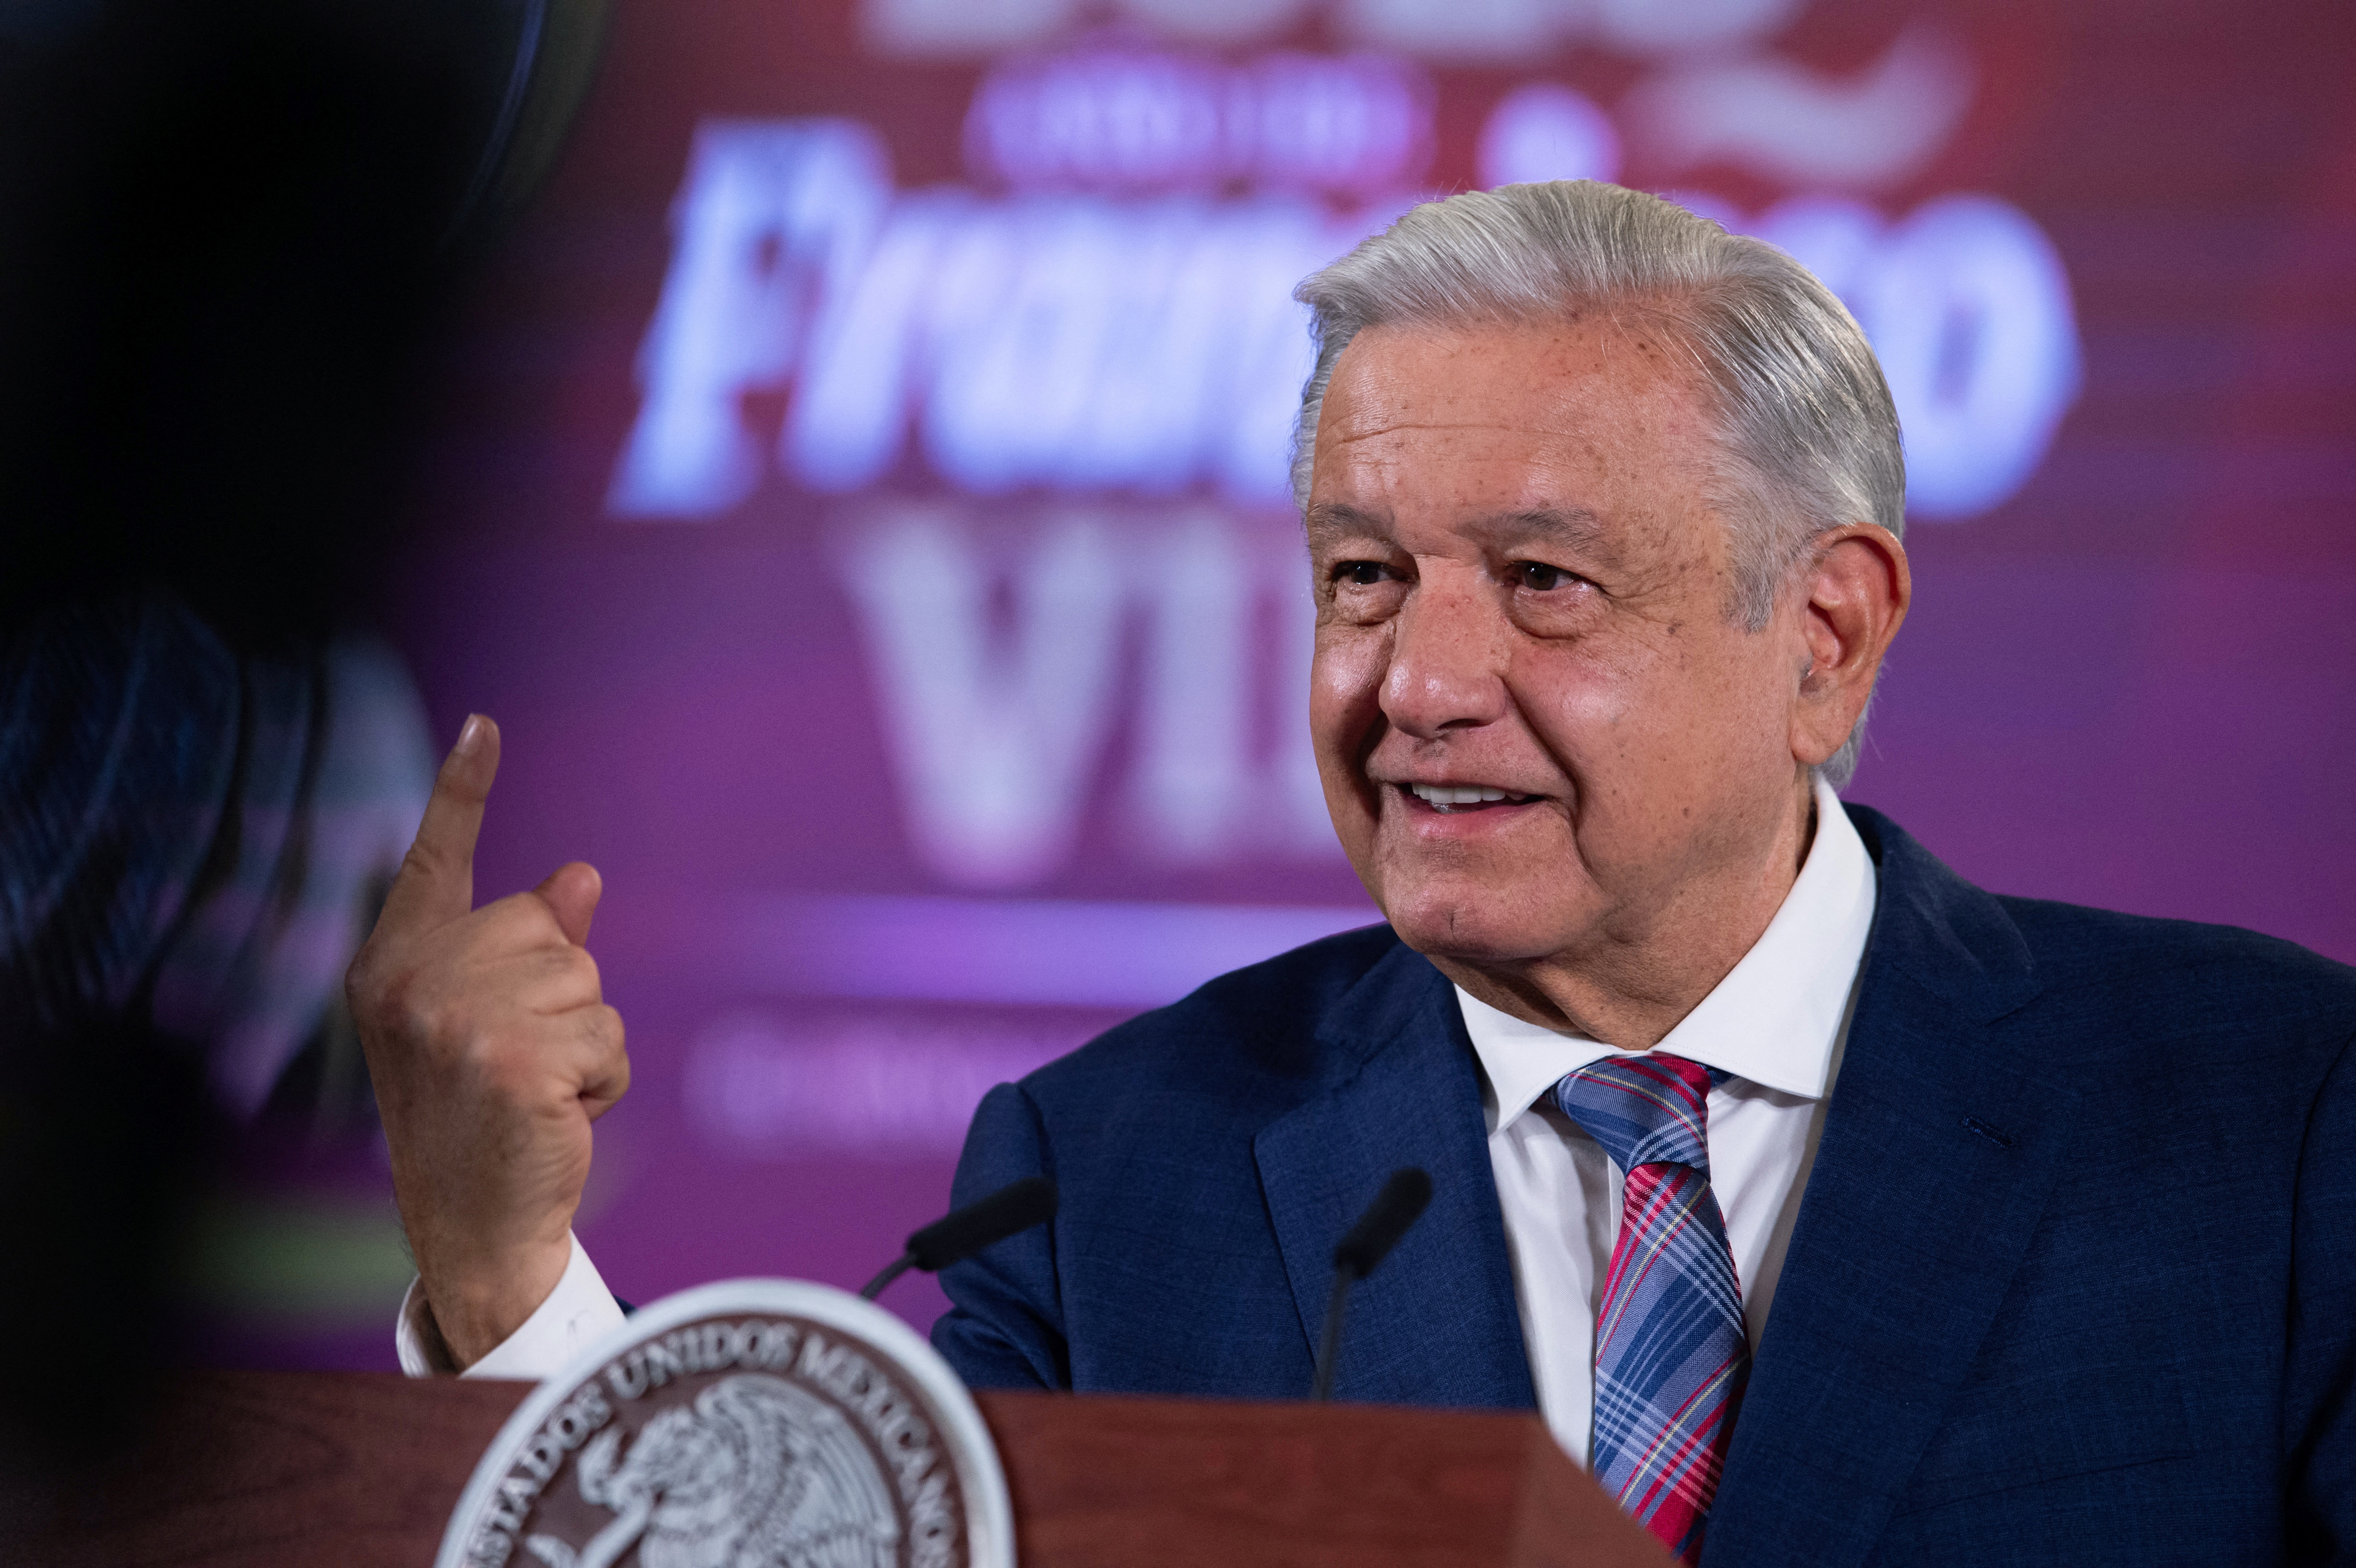 El presidente mexicano, Andrés Manuel López Obrador, rechaza el nuevo plan de muro fronterizo antes de las conversaciones con funcionarios estadounidenses.